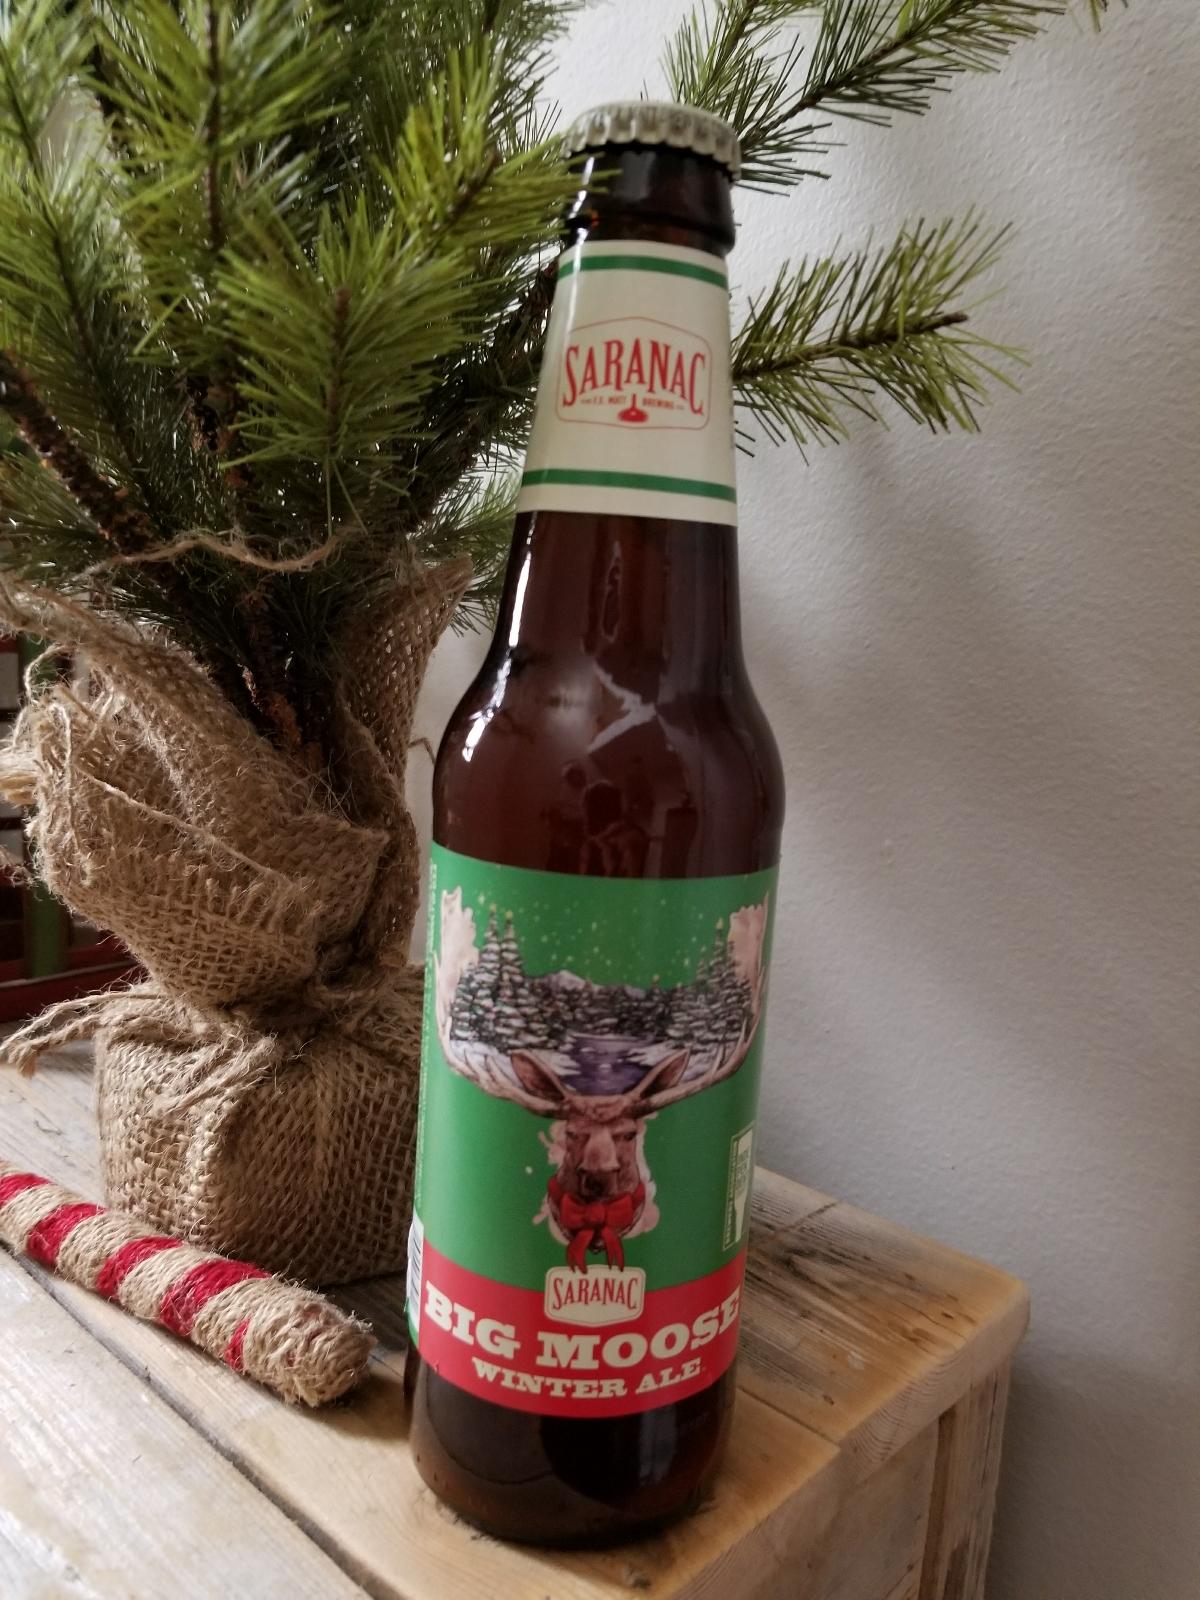 Big Moose Winter Ale